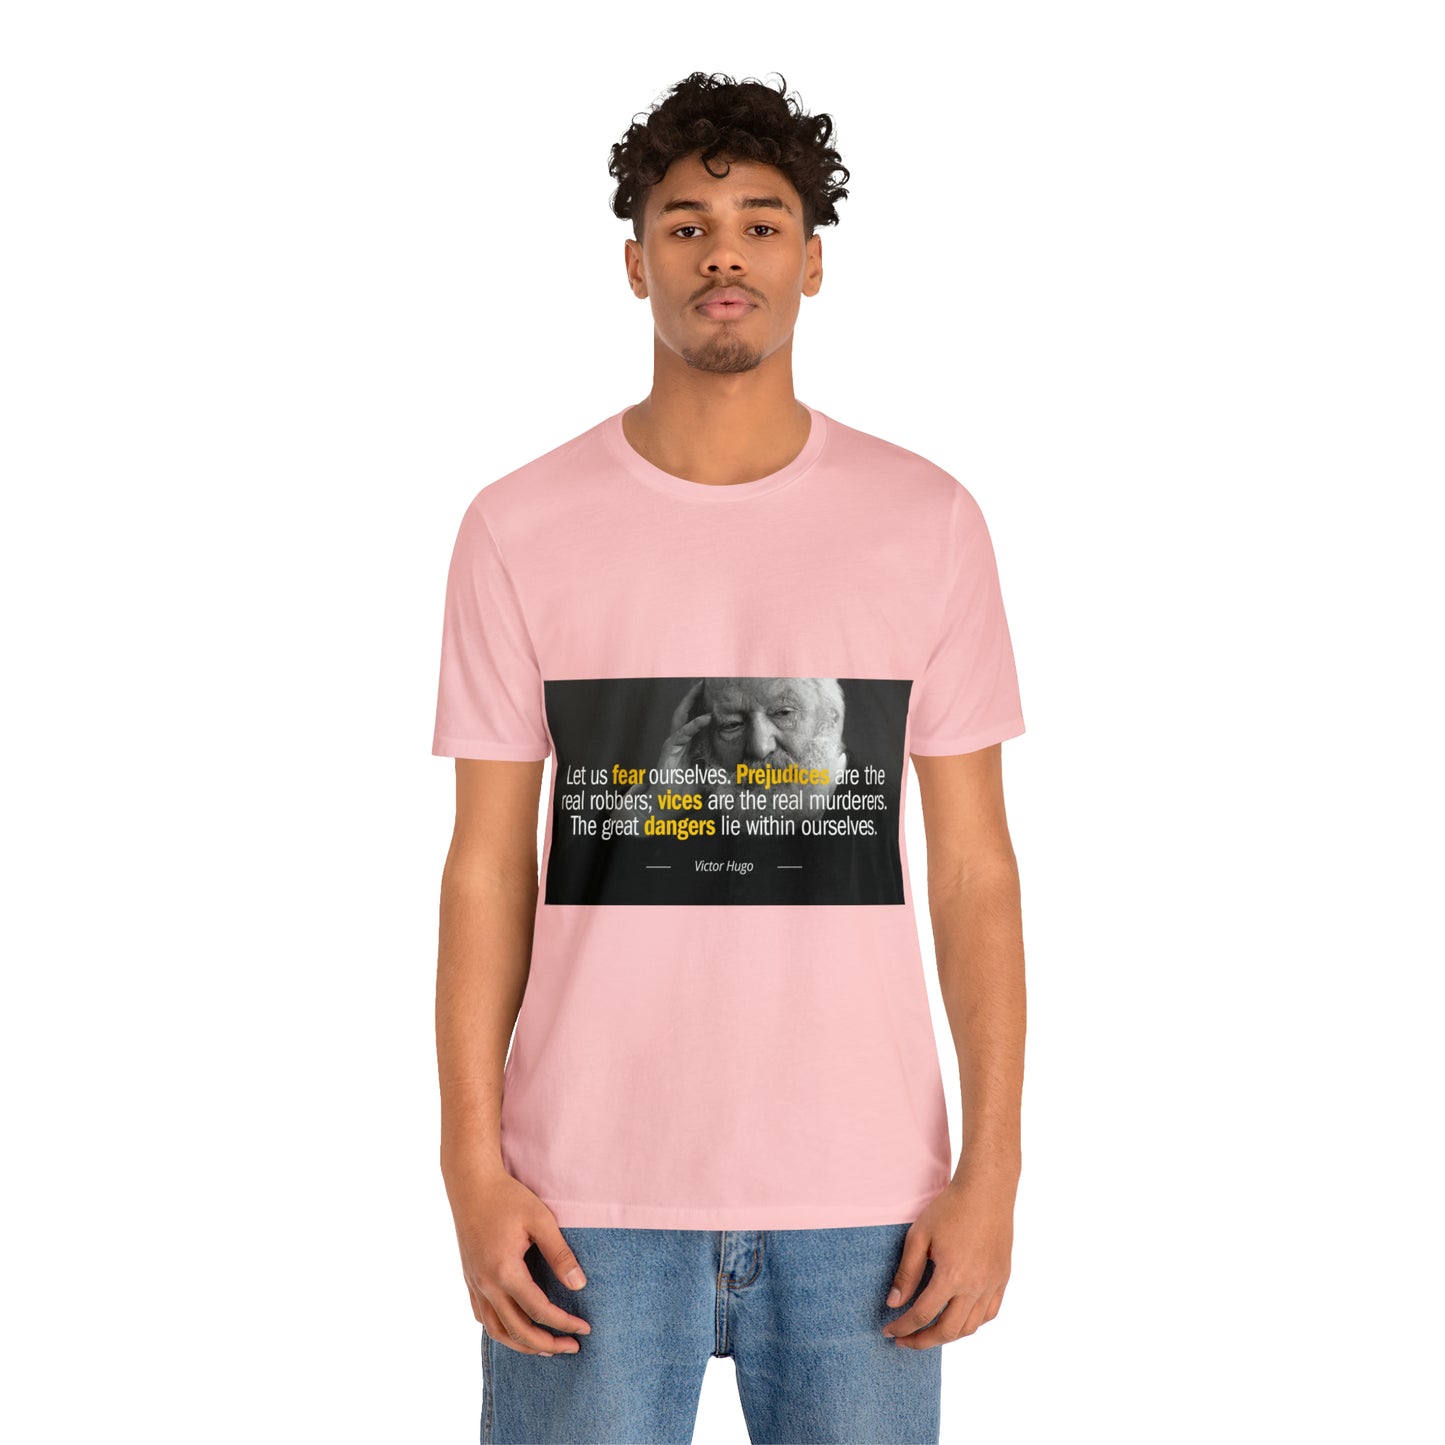 Unisex Jersey Kısa Kollu Tişört